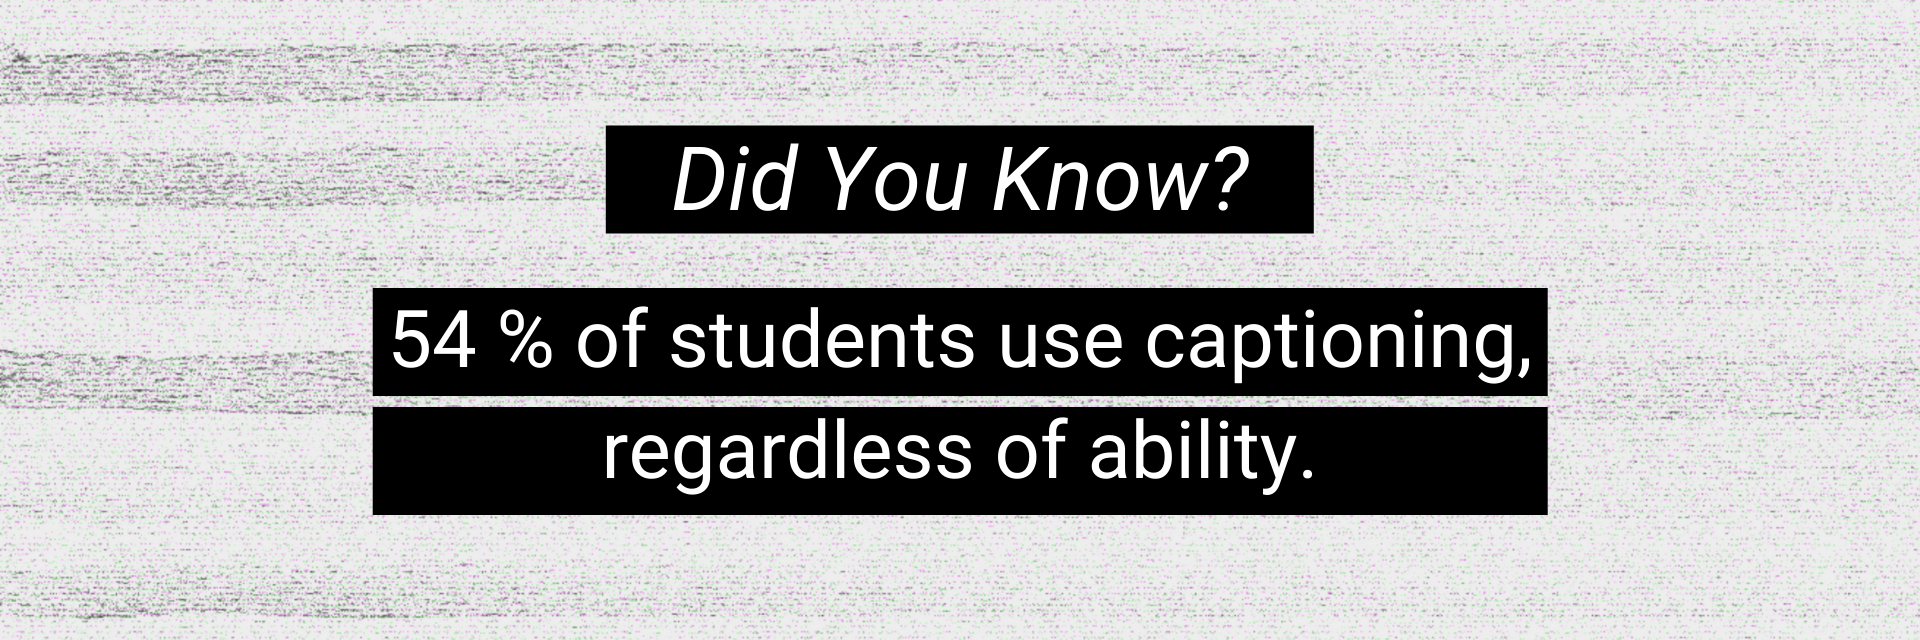 54% of students use captioning, regardless of ability.